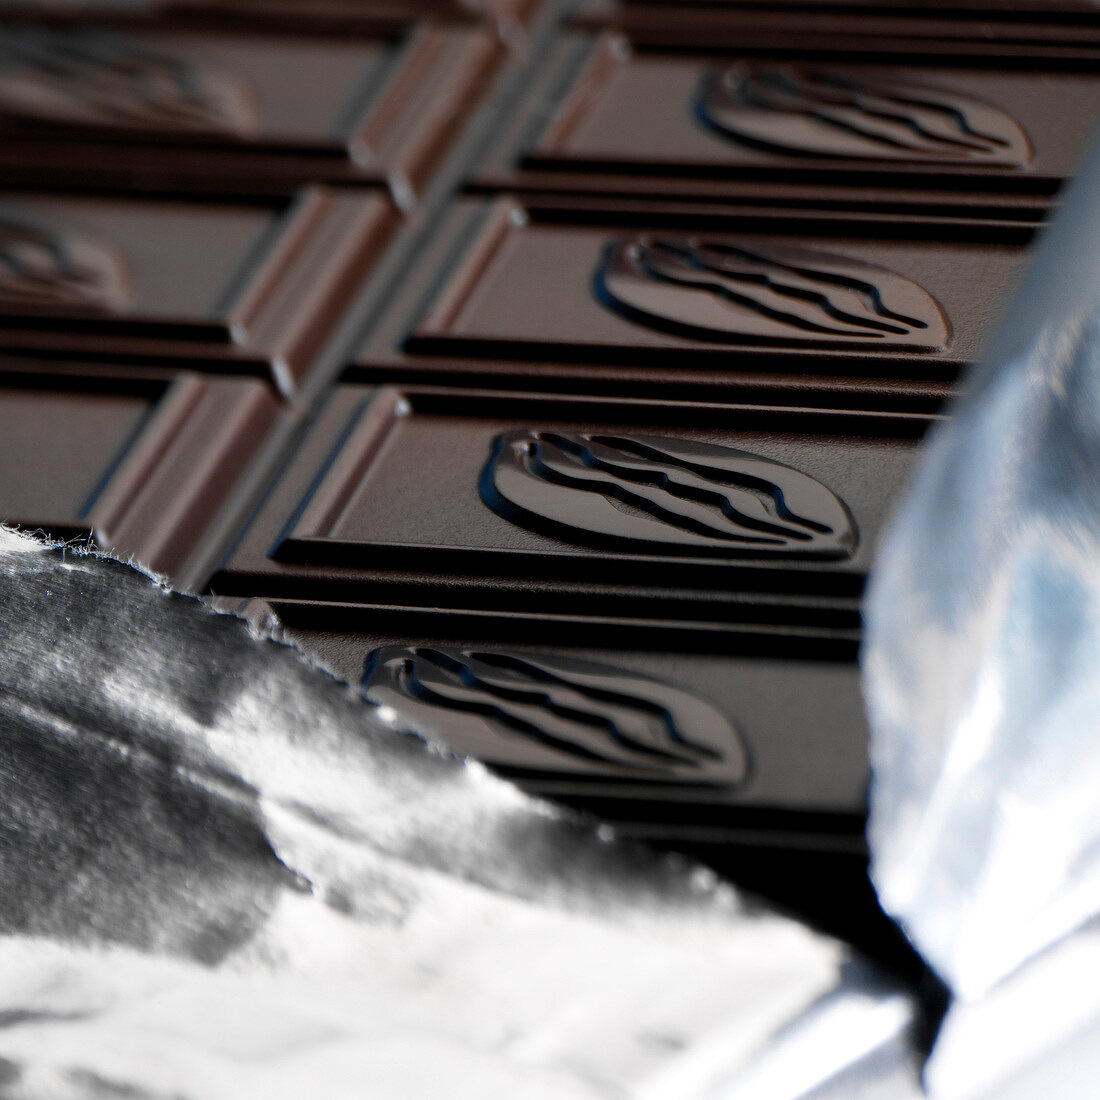 Tafel dunkle Schokolade auf Folie